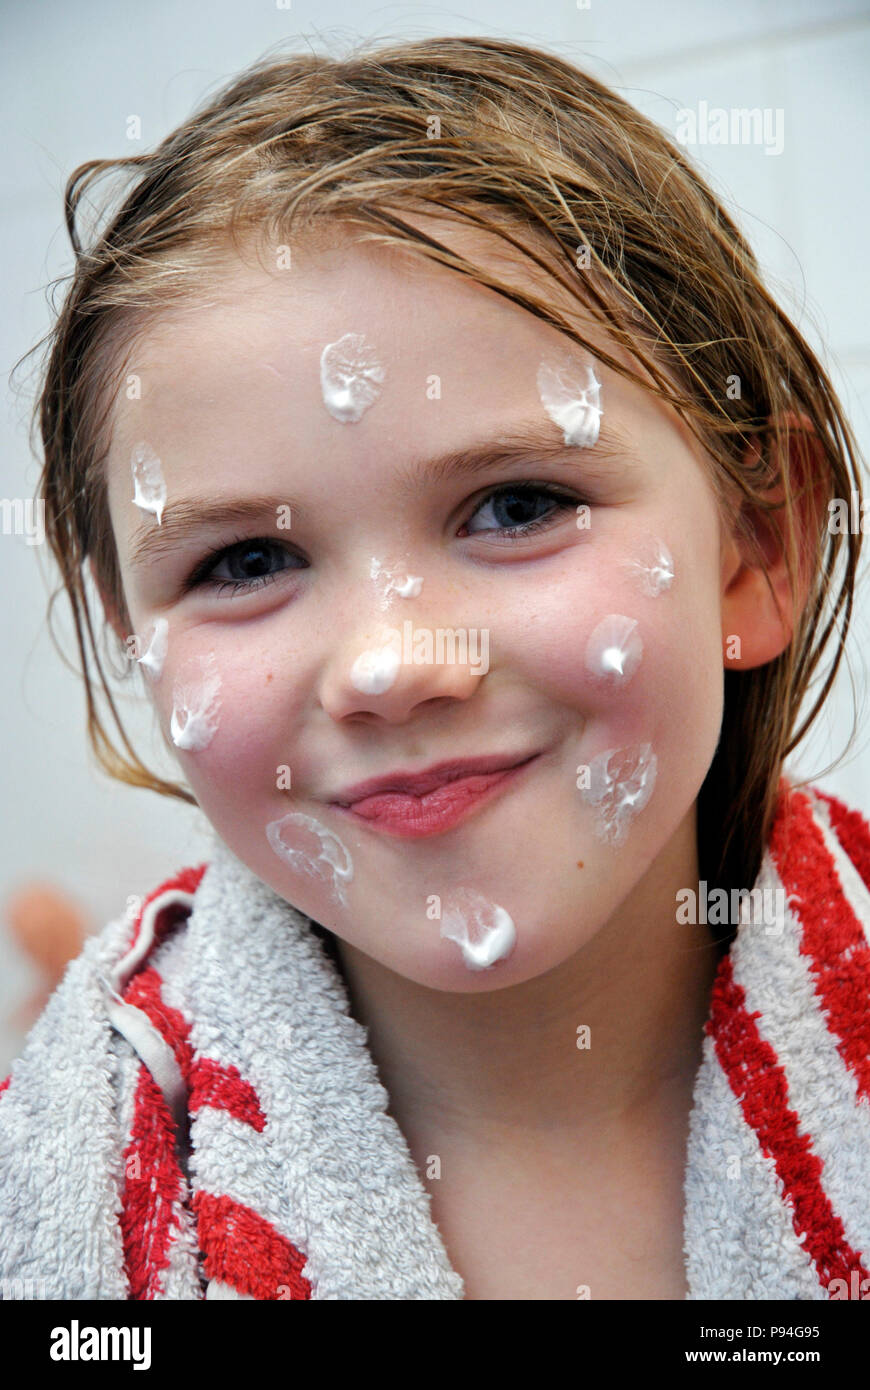 Emma mit Hautcreme-Tupfern im Gesicht Stock Photo